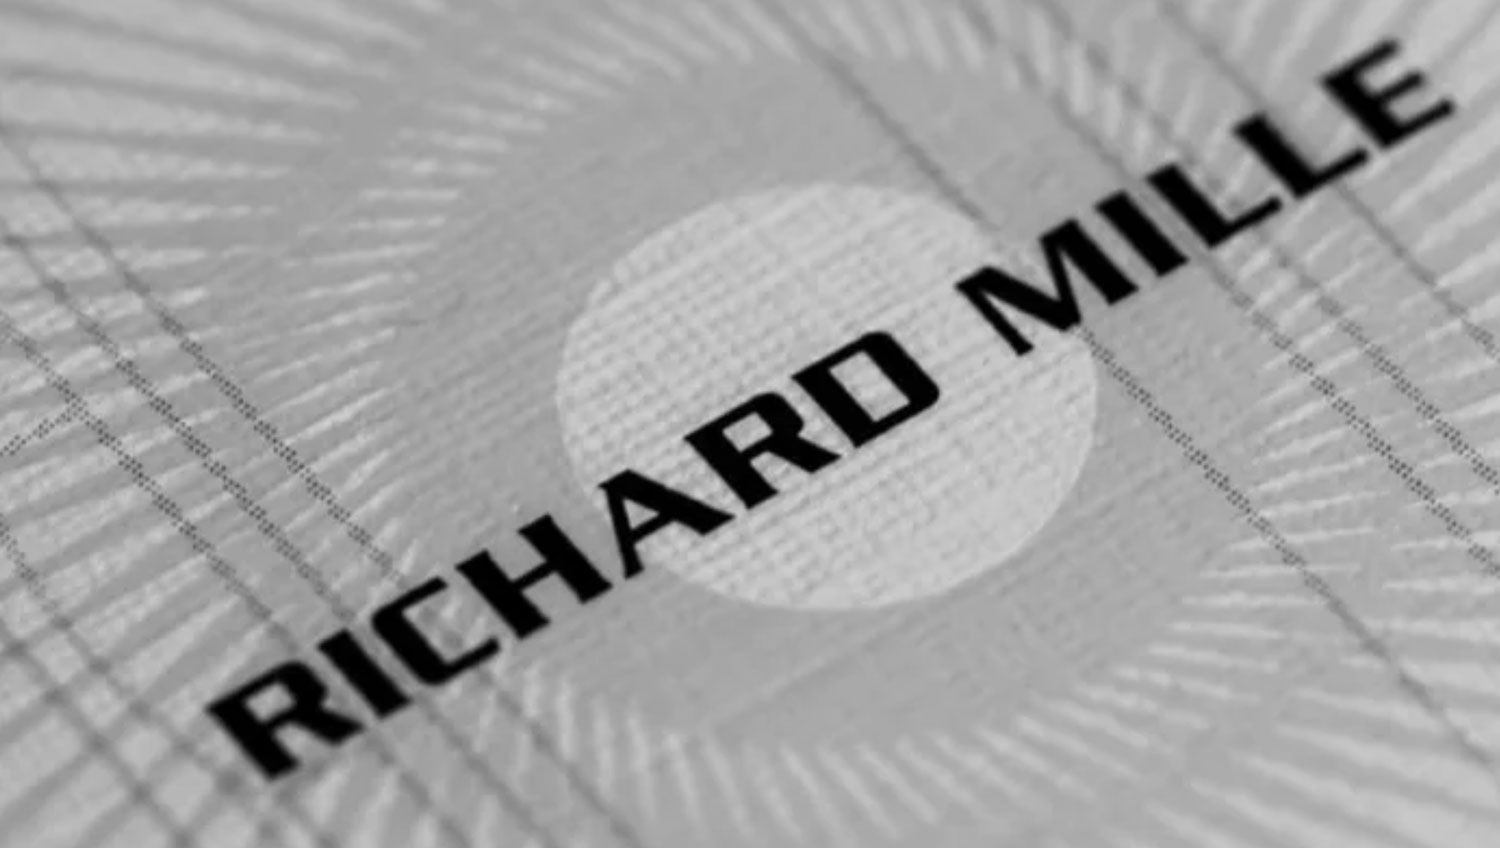 Richard Mille Rm 07-01 NTPT